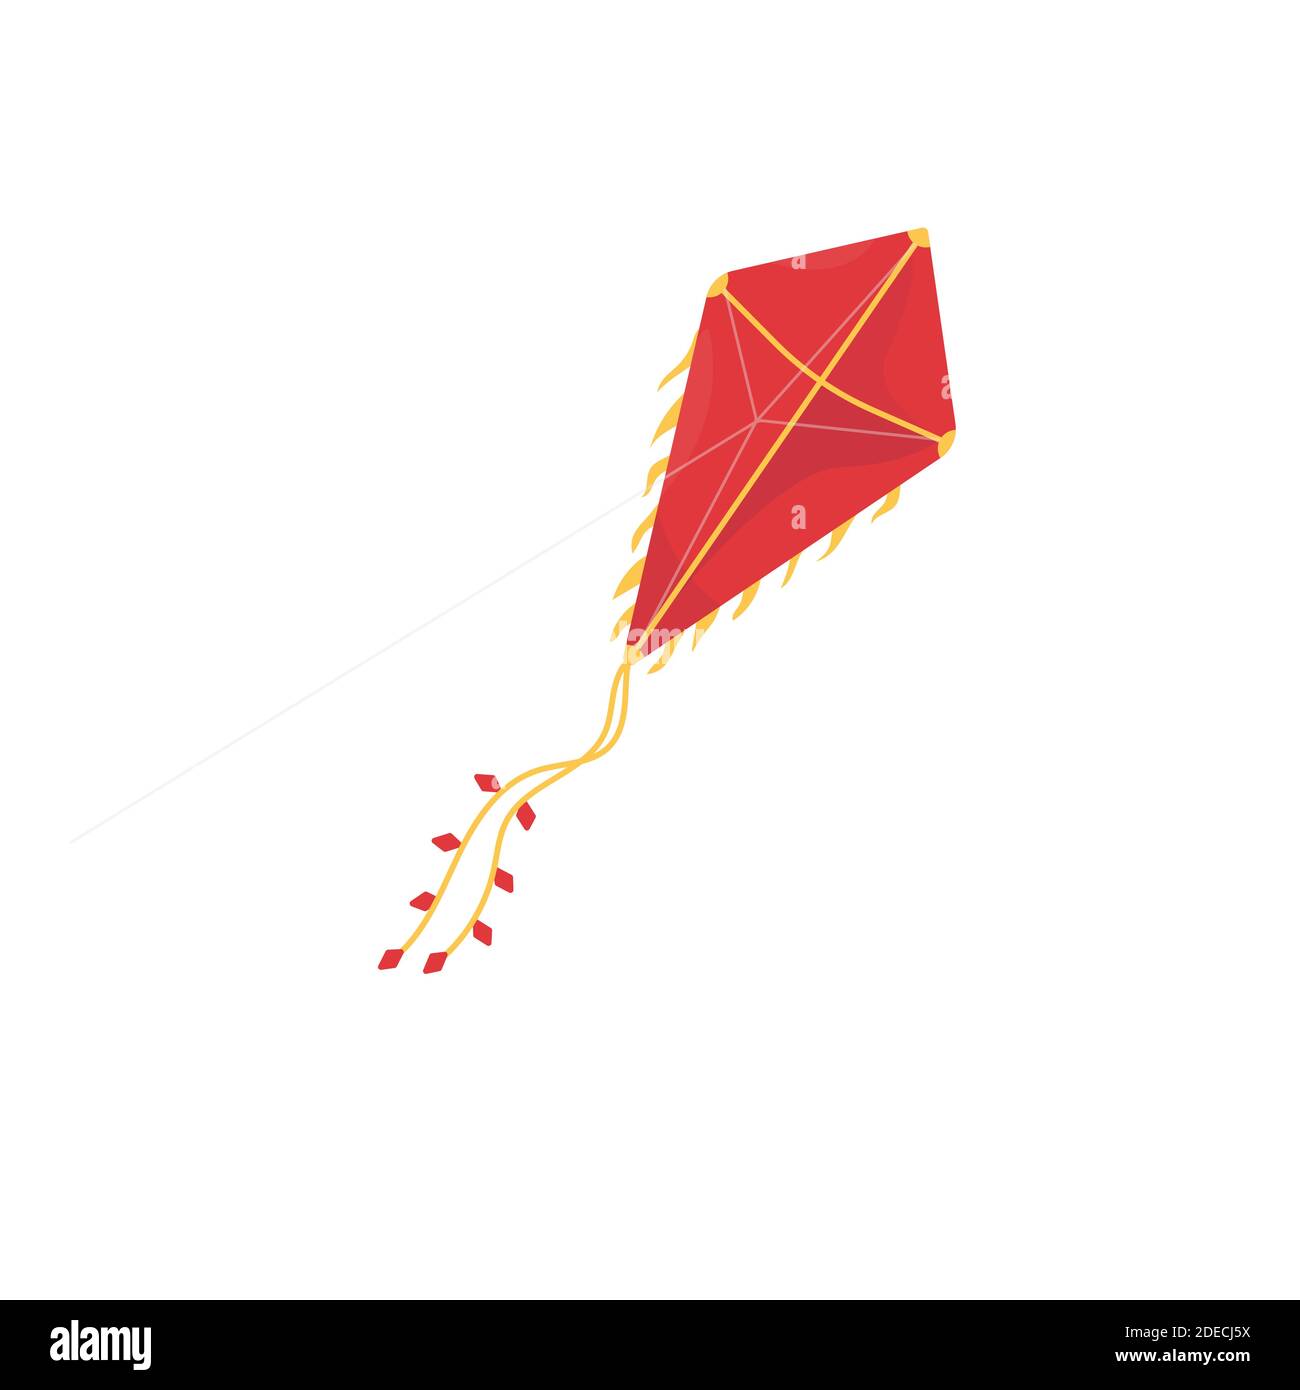 Flying kite illustration Stock Vector Image & Art - Alamy